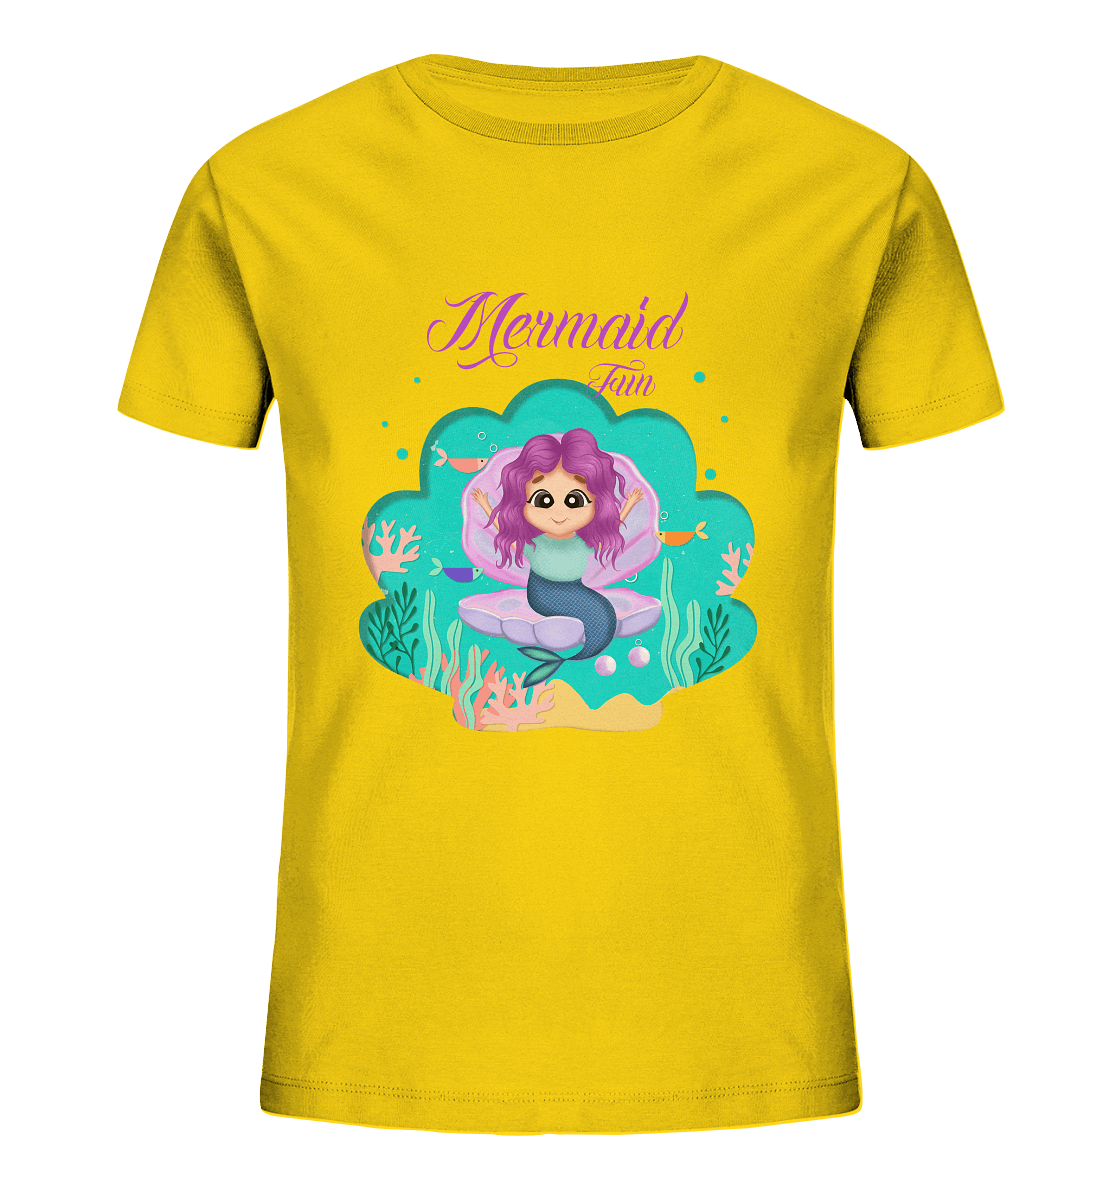 Meerjungfrau Cartoon T-Shirt mit handgezeichneten Mermaid Cartoon und Beschriftung "Mermaid Fun" baby ariel T-Shirt in gelb von Bloominic